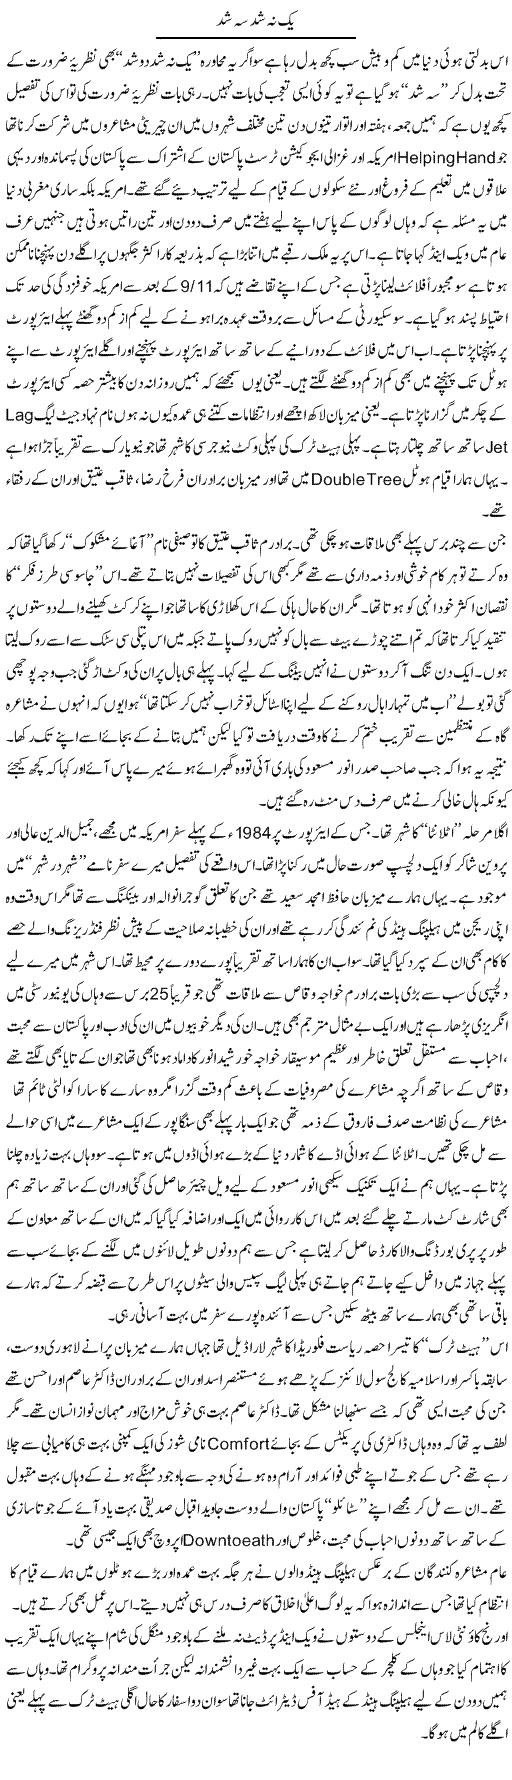 Yak Nah Shud Sah Shud | Amjad Islam Amjad | Daily Urdu Columns